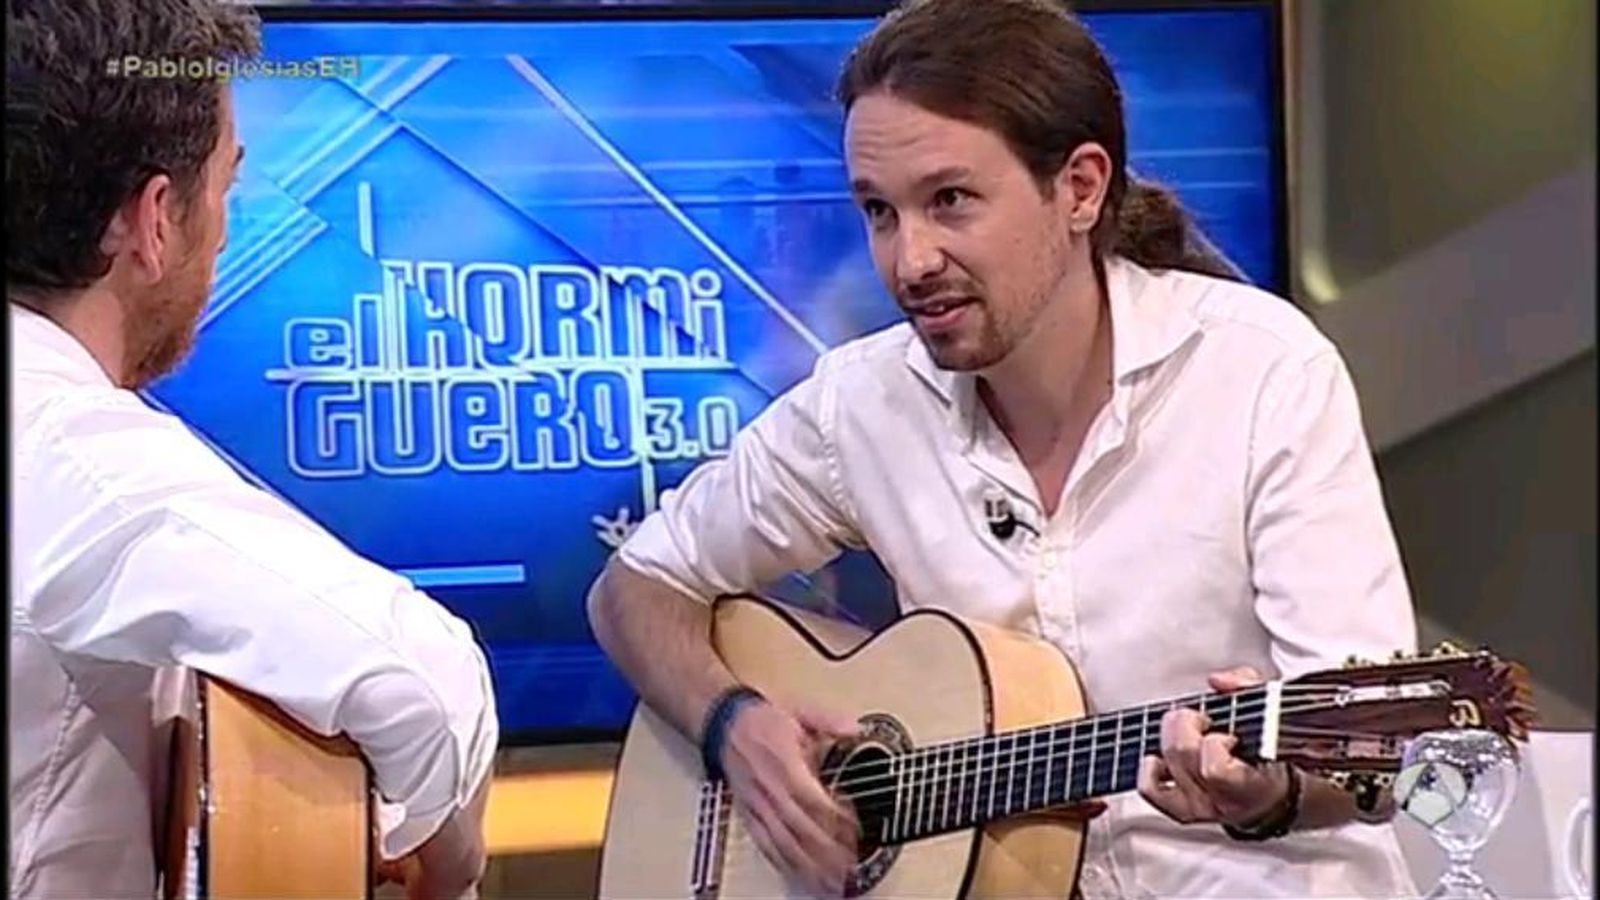 Foto: Pablo Iglesias interpretó en directo una canción de Javier Krahe. (Twitter Podemos)